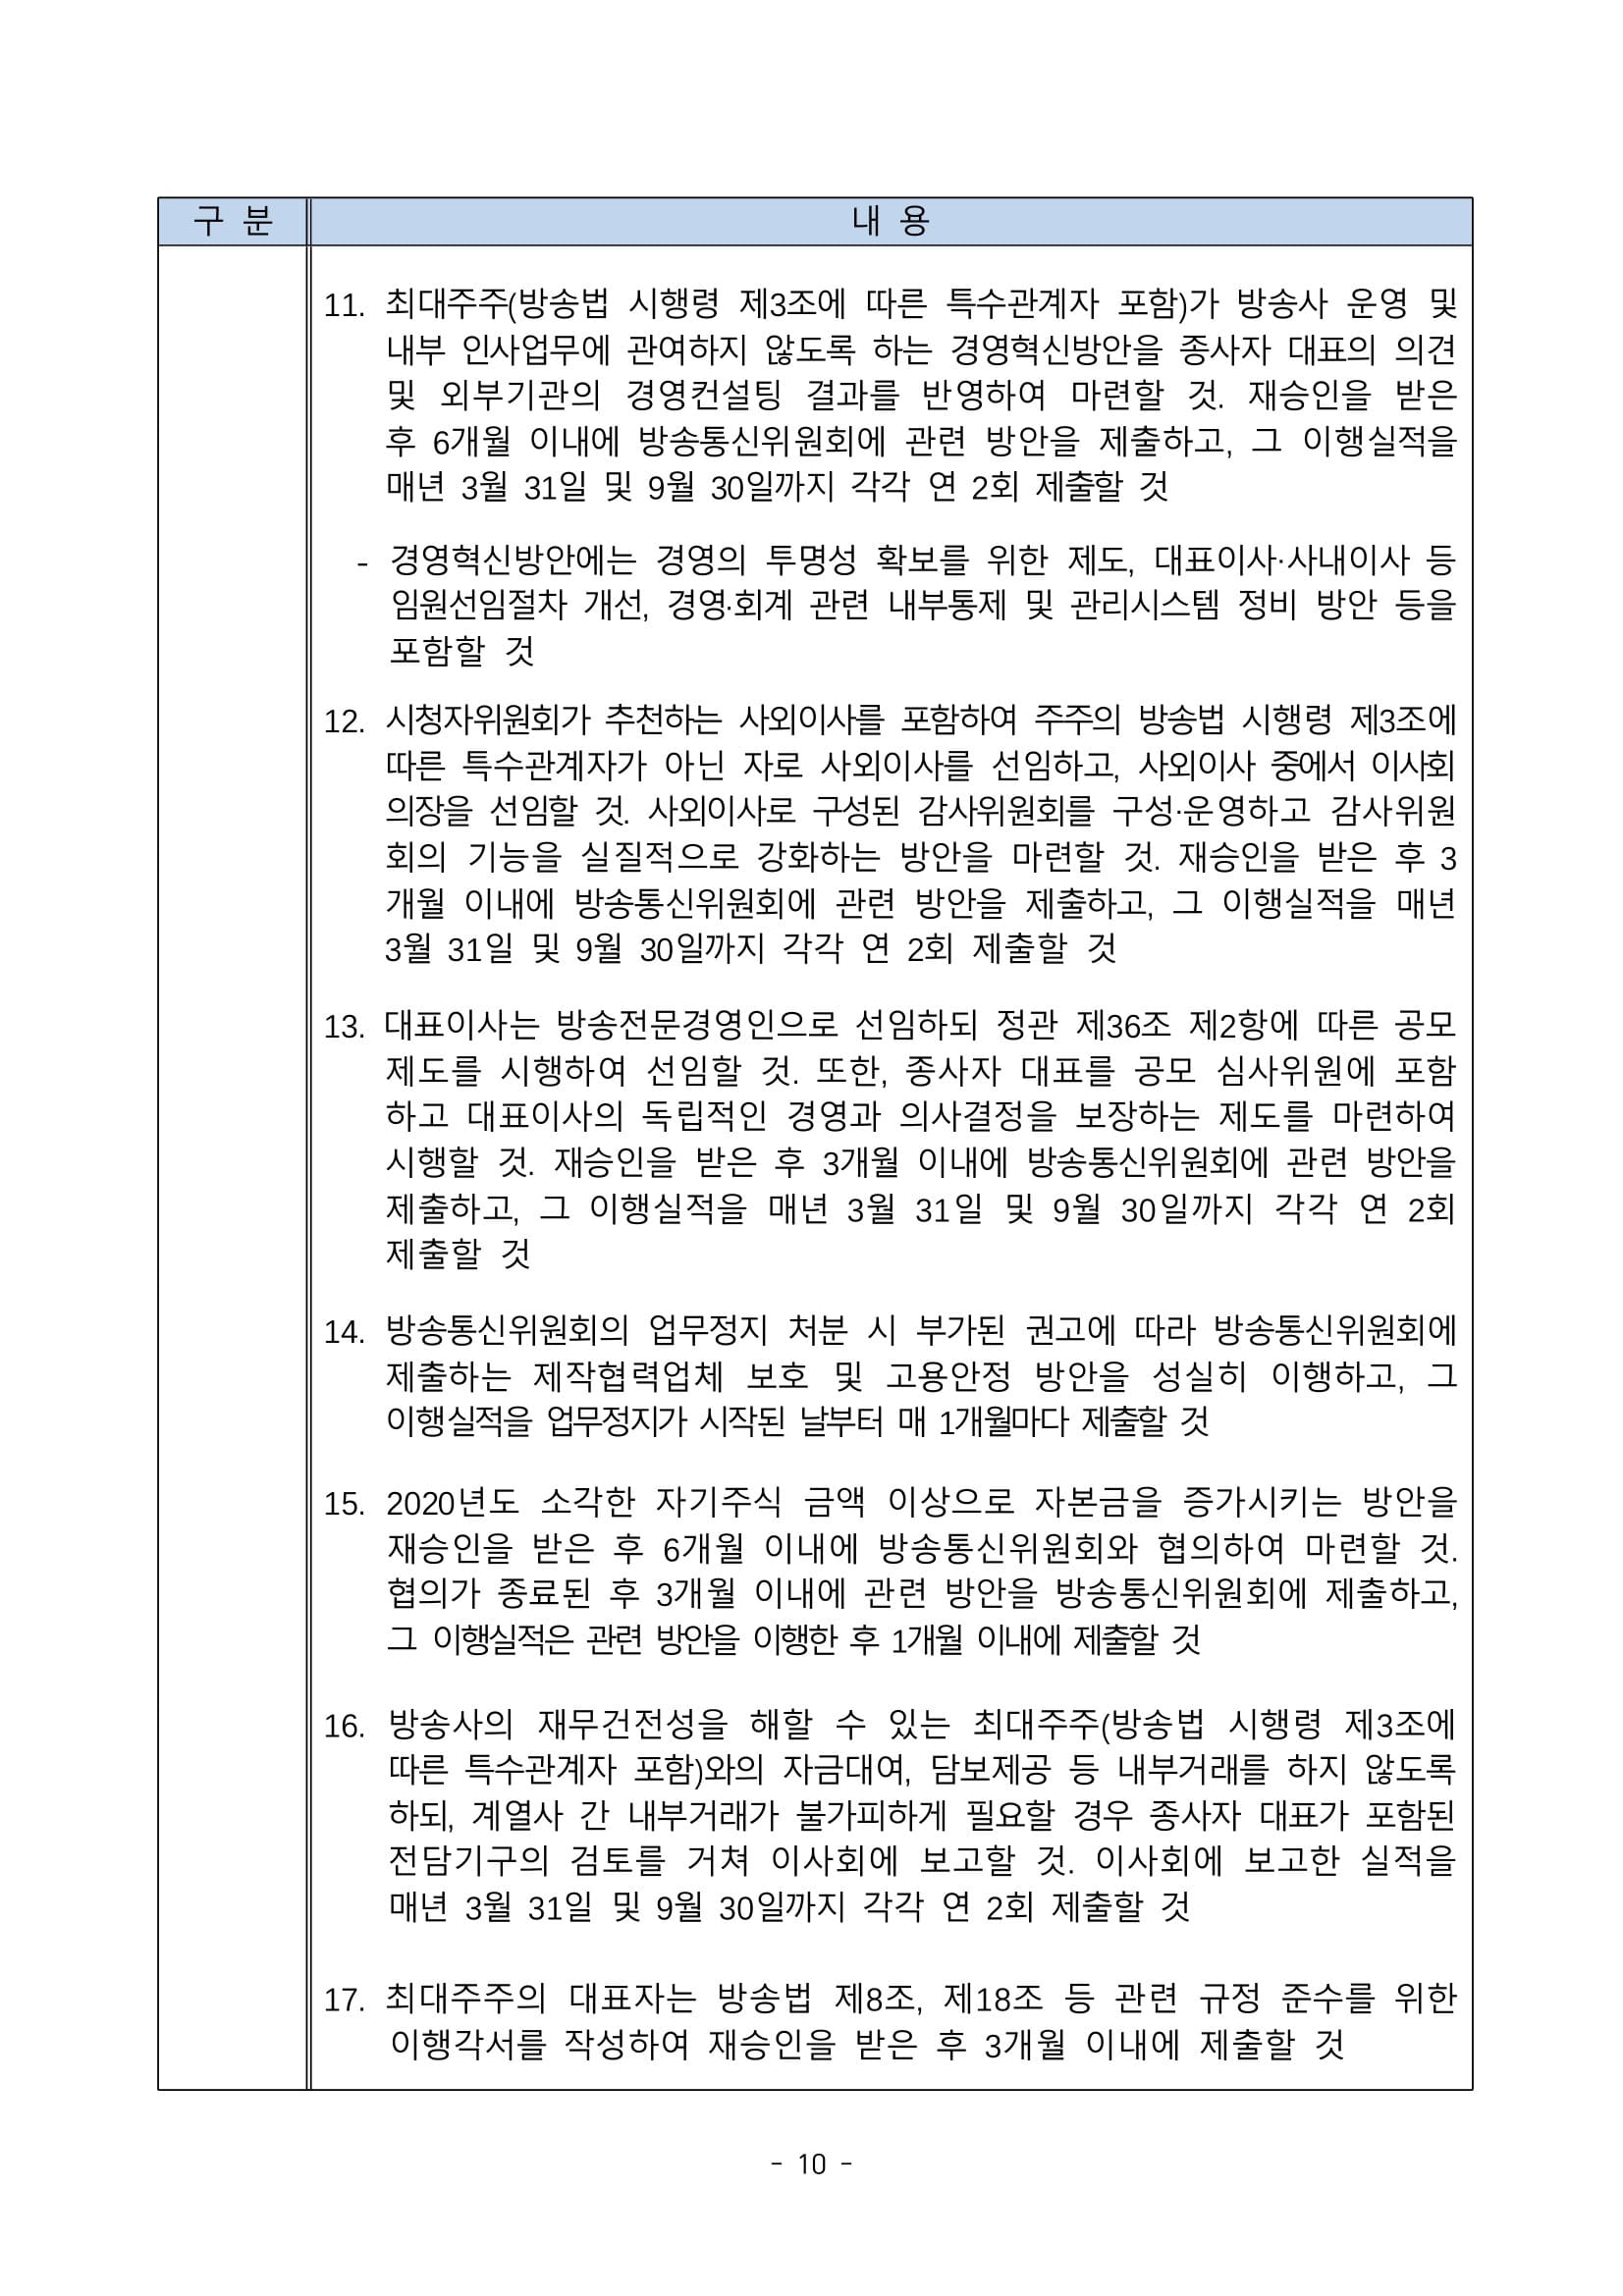 방송통신위원회(위원장 한상혁, 이하 ‘방통위’라 함)는 2020년 11월 27일(금) 14_0010.jpg